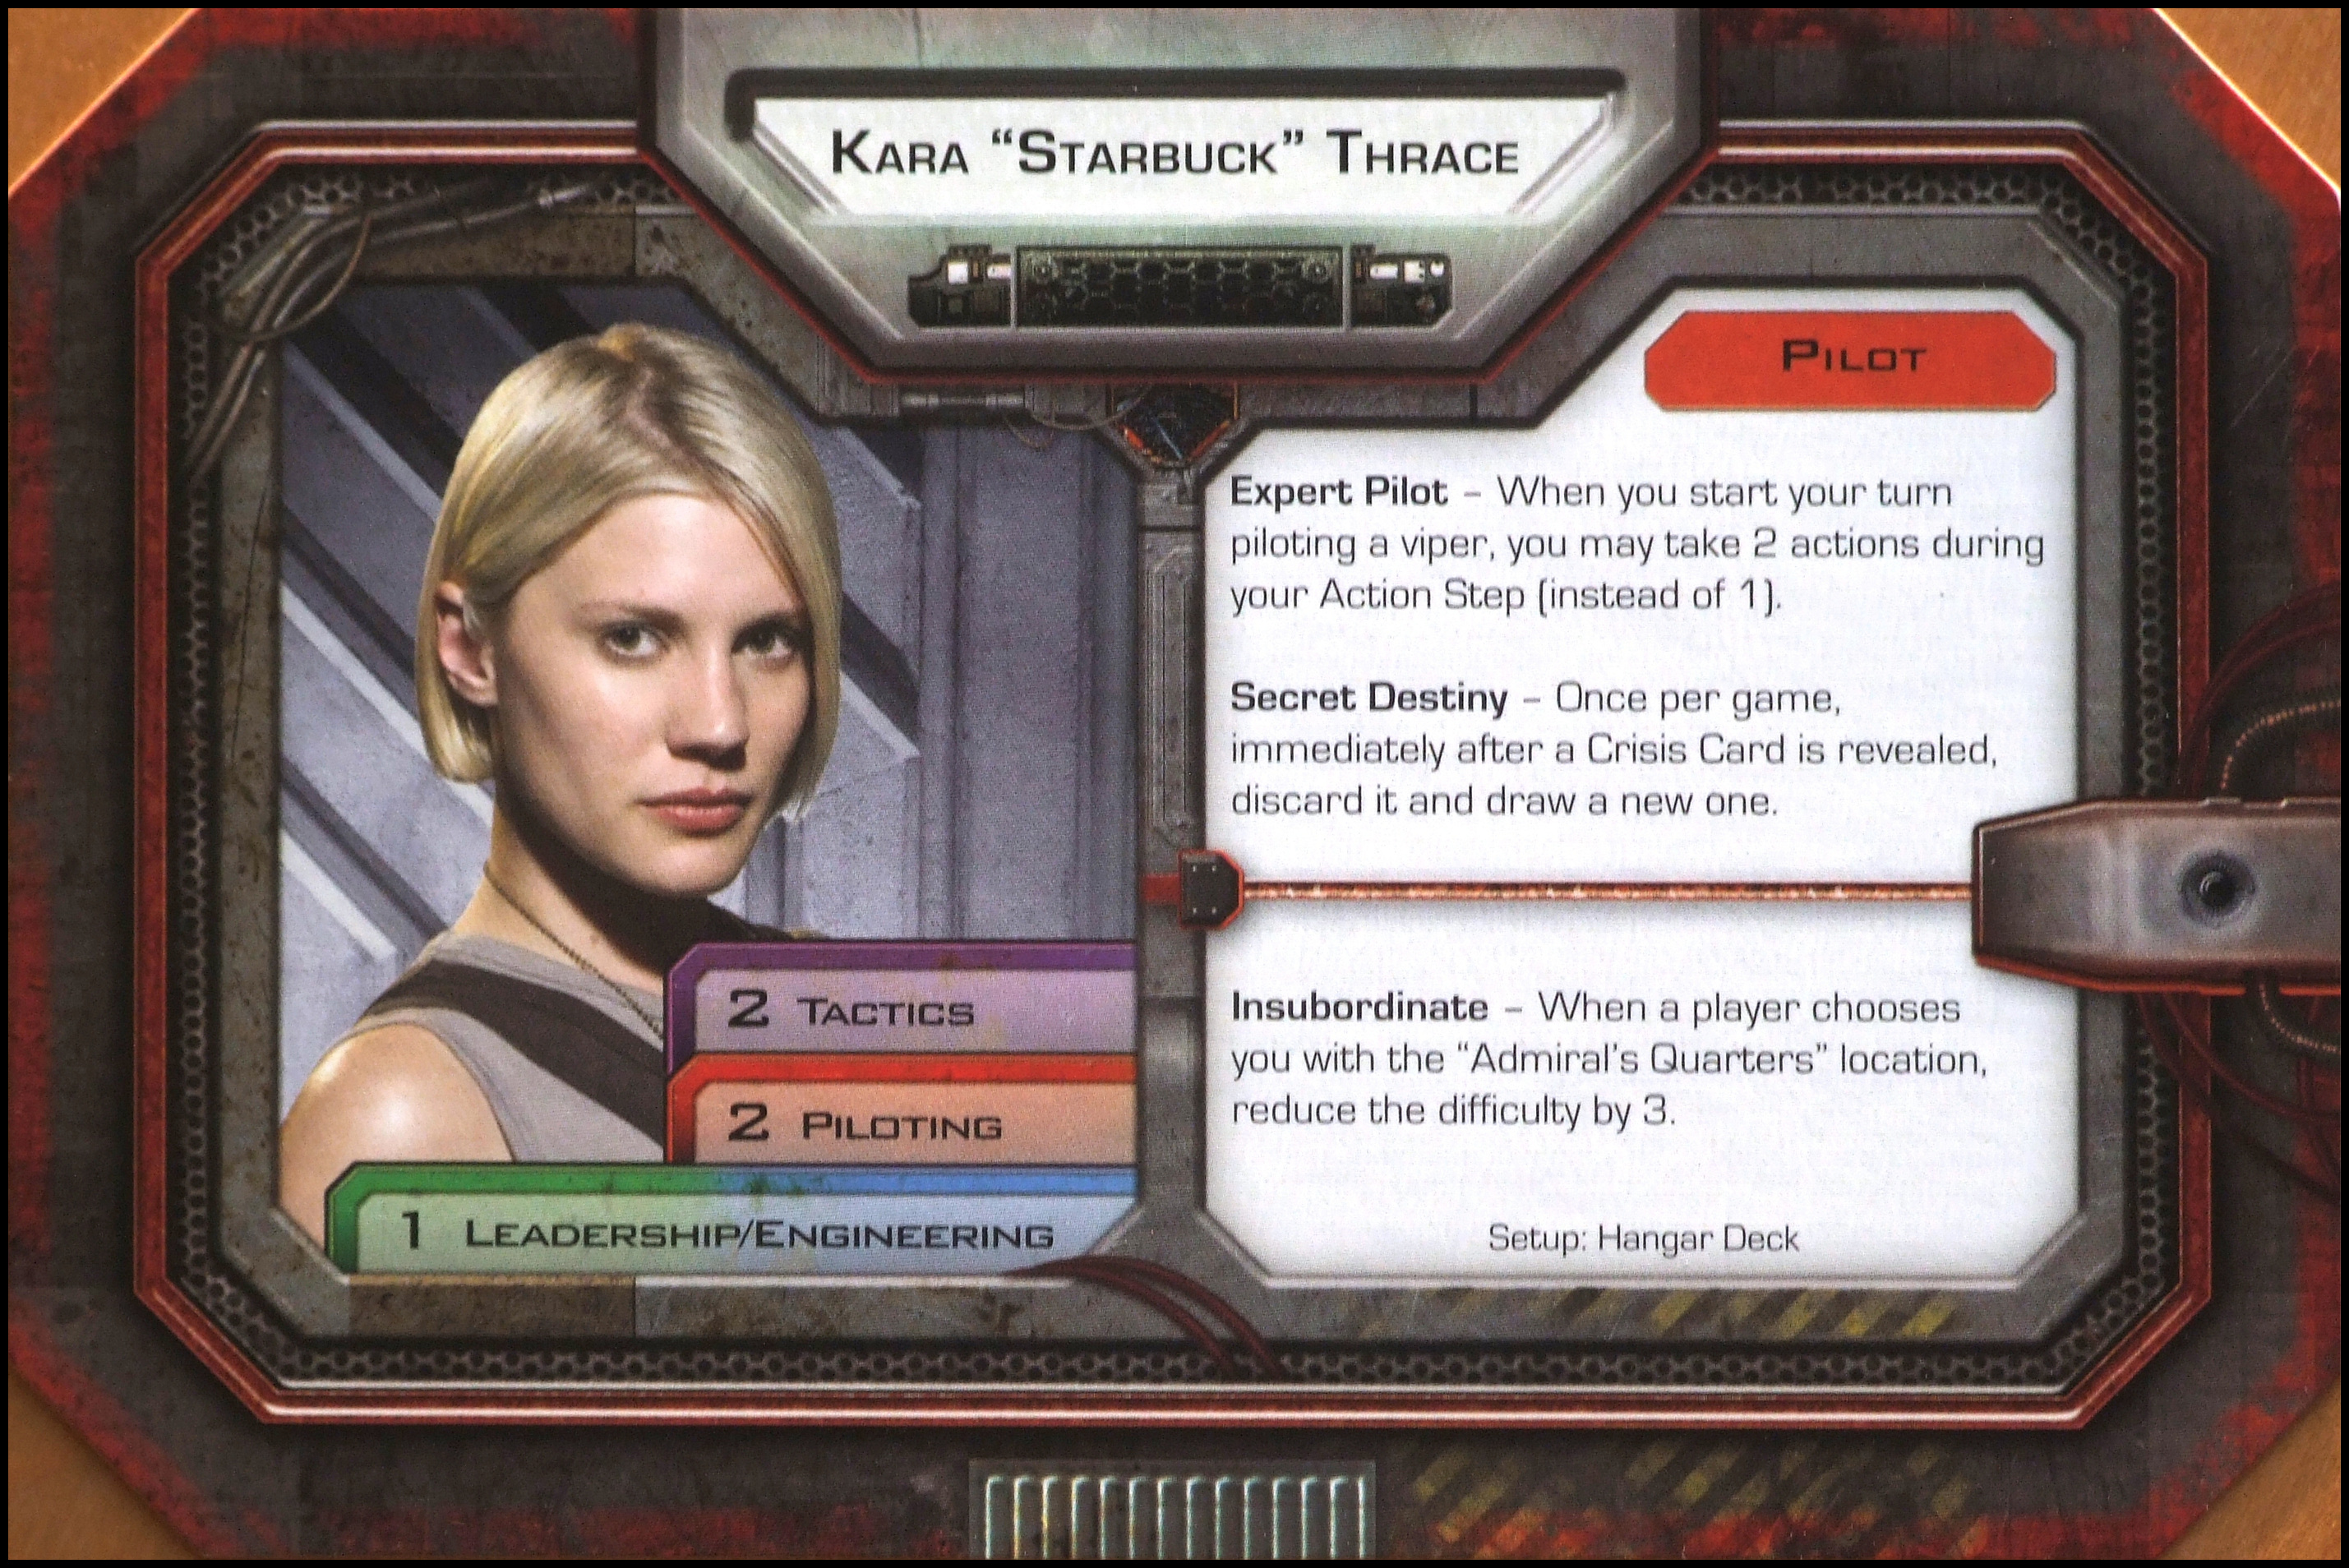 Battlestar Galactica: The Board Game - Kara Thrace Card